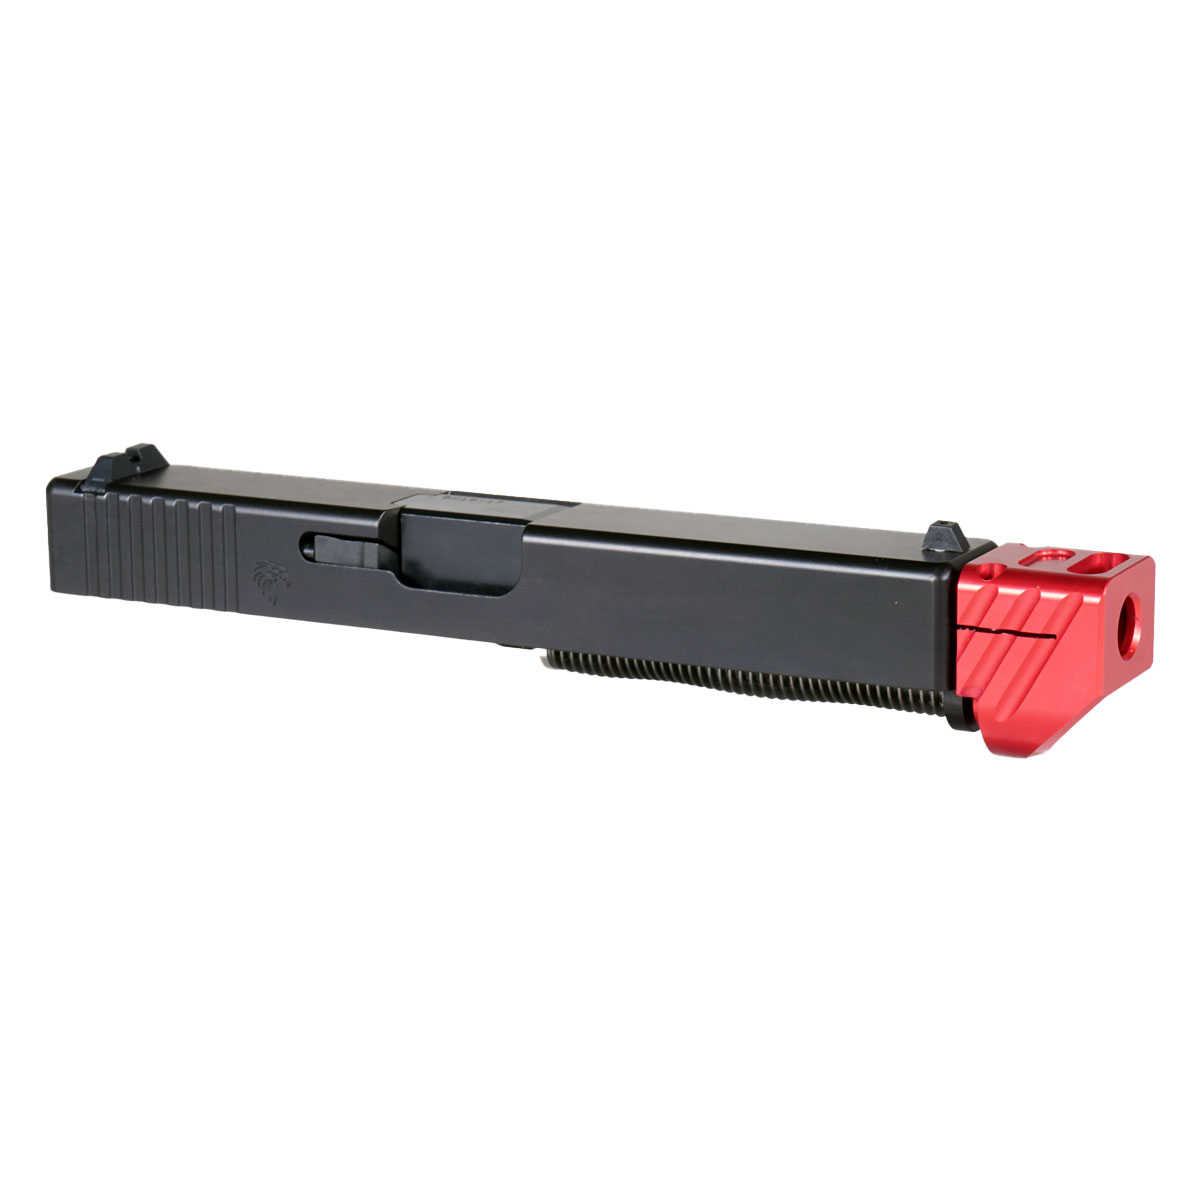 DD 'Boomerango V3 w/ Red Compensator' 9mm Complete Slide Kit - Glock 17 Gen 1-3 Compatible